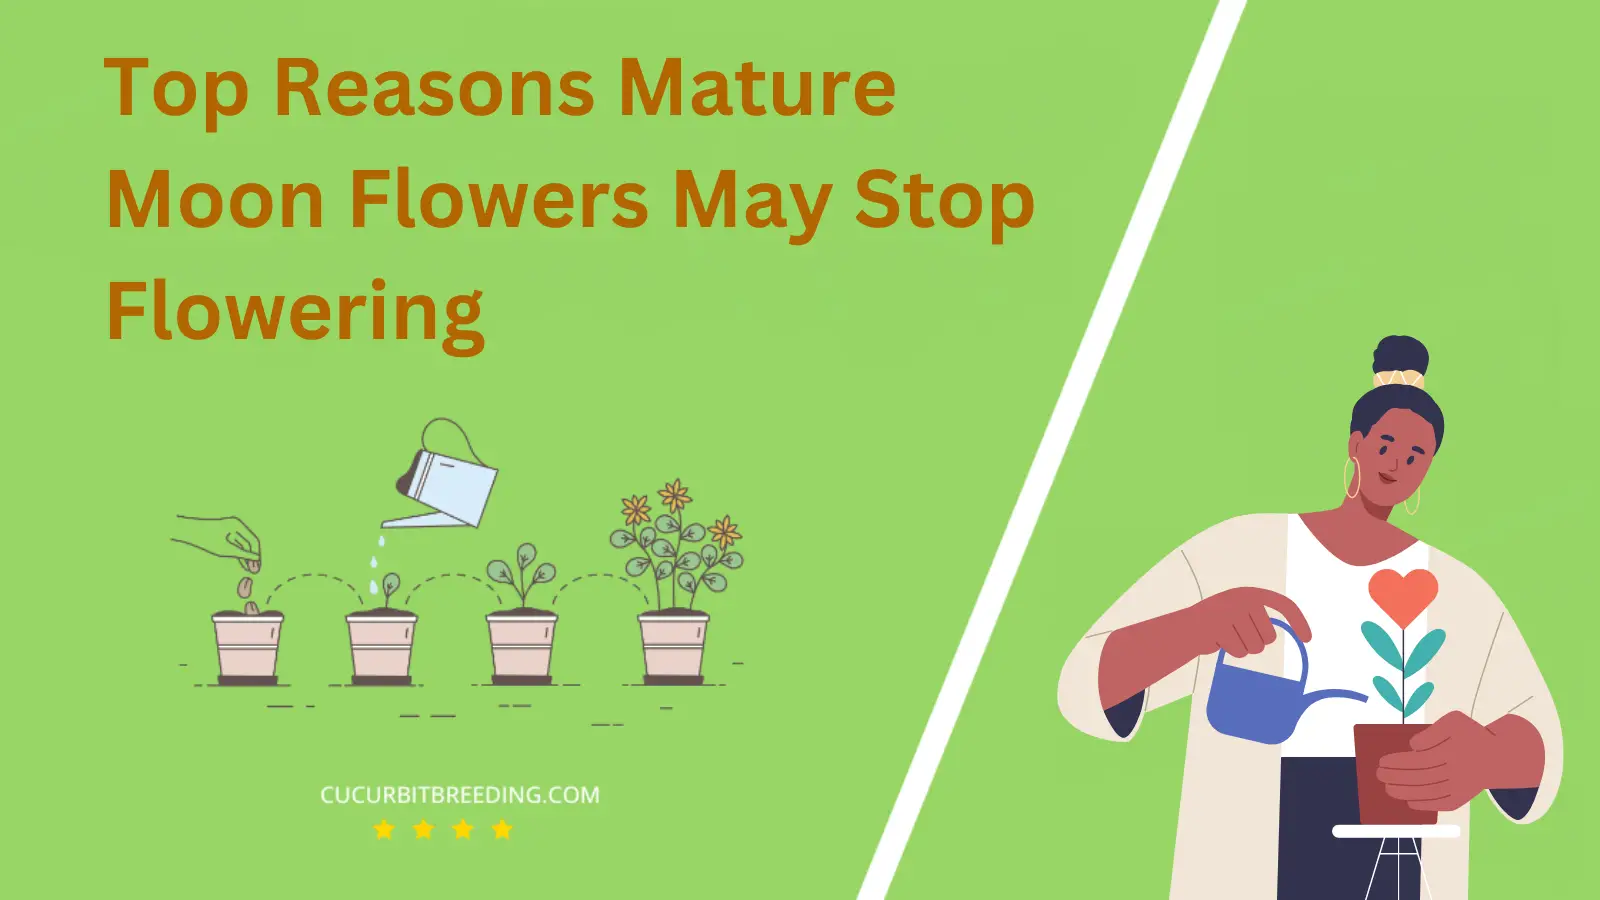 Top Reasons Mature Moon Flowers May Stop Flowering